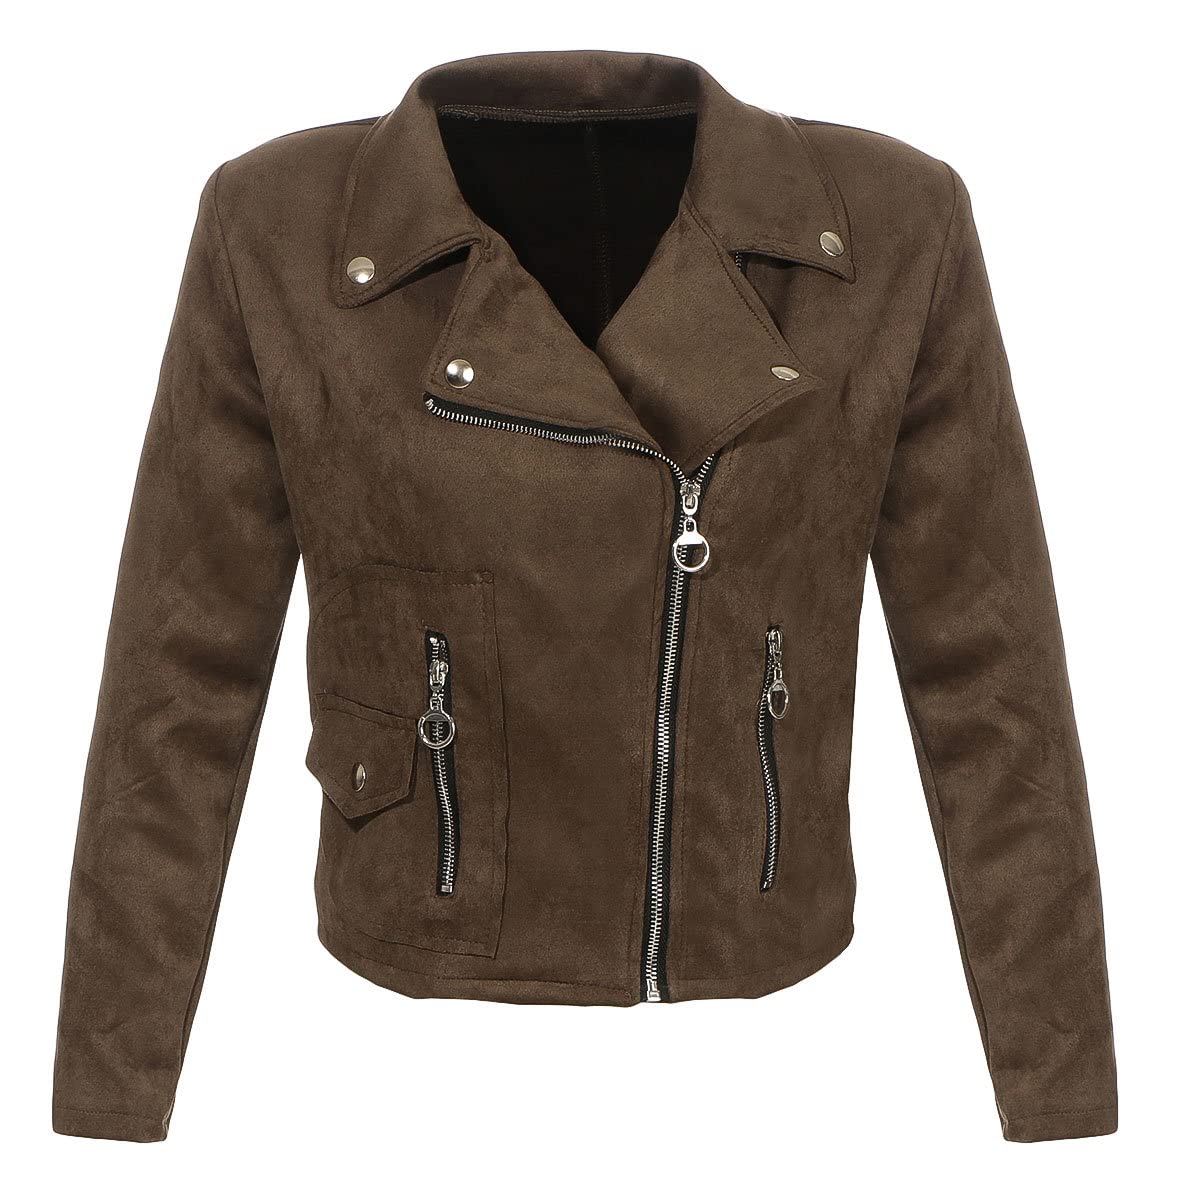 Malito Damen Jacke | Velours Jacke | Biker Jacke mit Reißverschluss | Faux Leather - leichte Jacke 19617 (Oliv, XL)